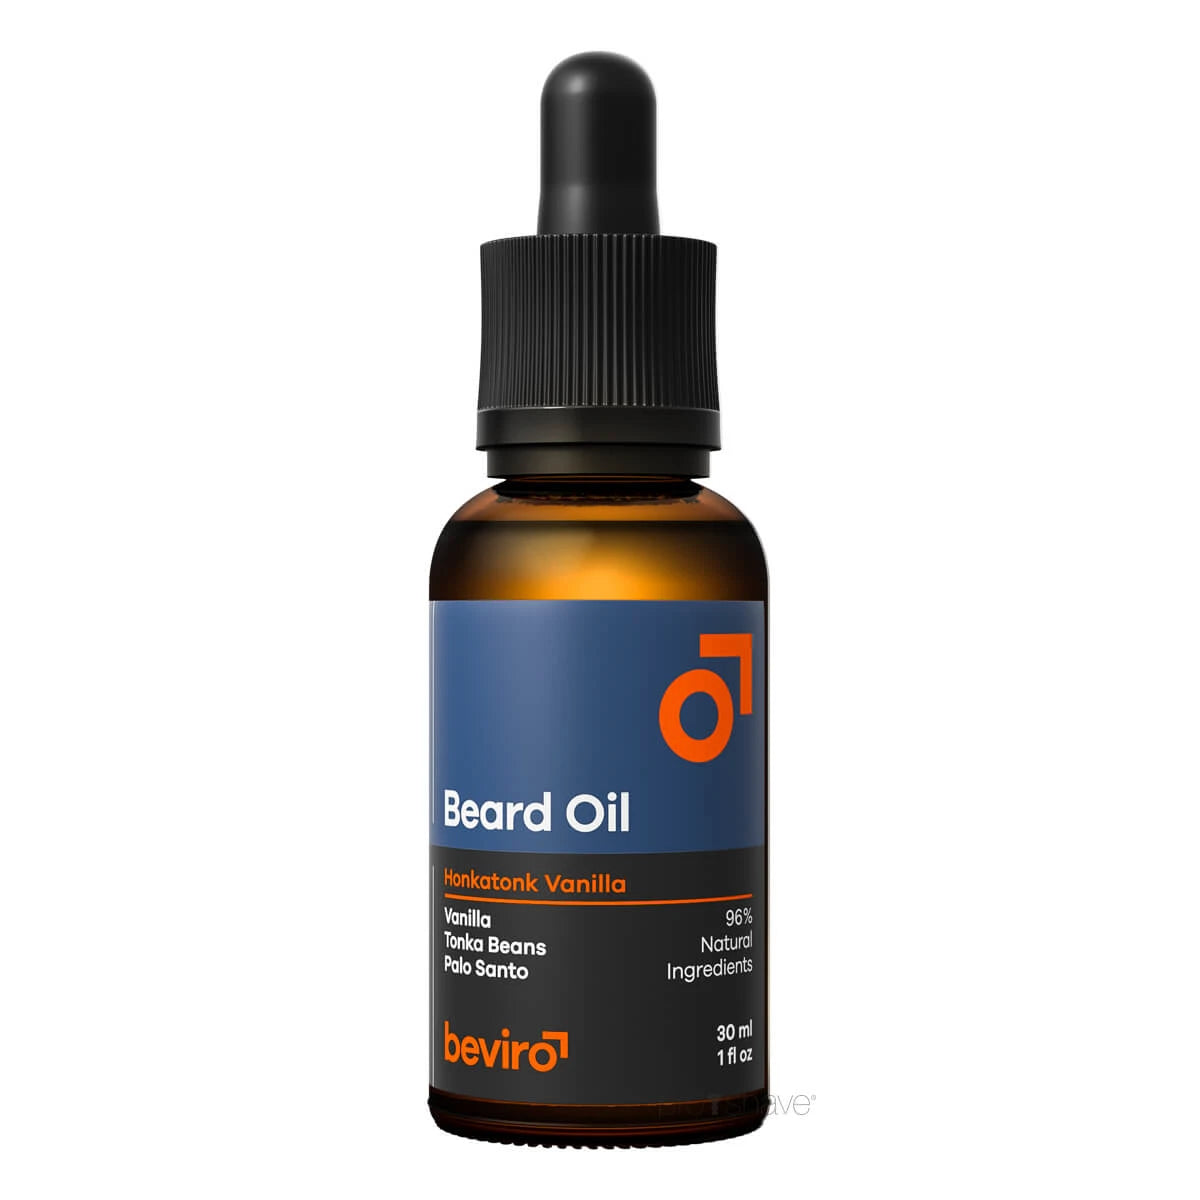 Beviro, Beard Oil- Honkatonk Vanilla